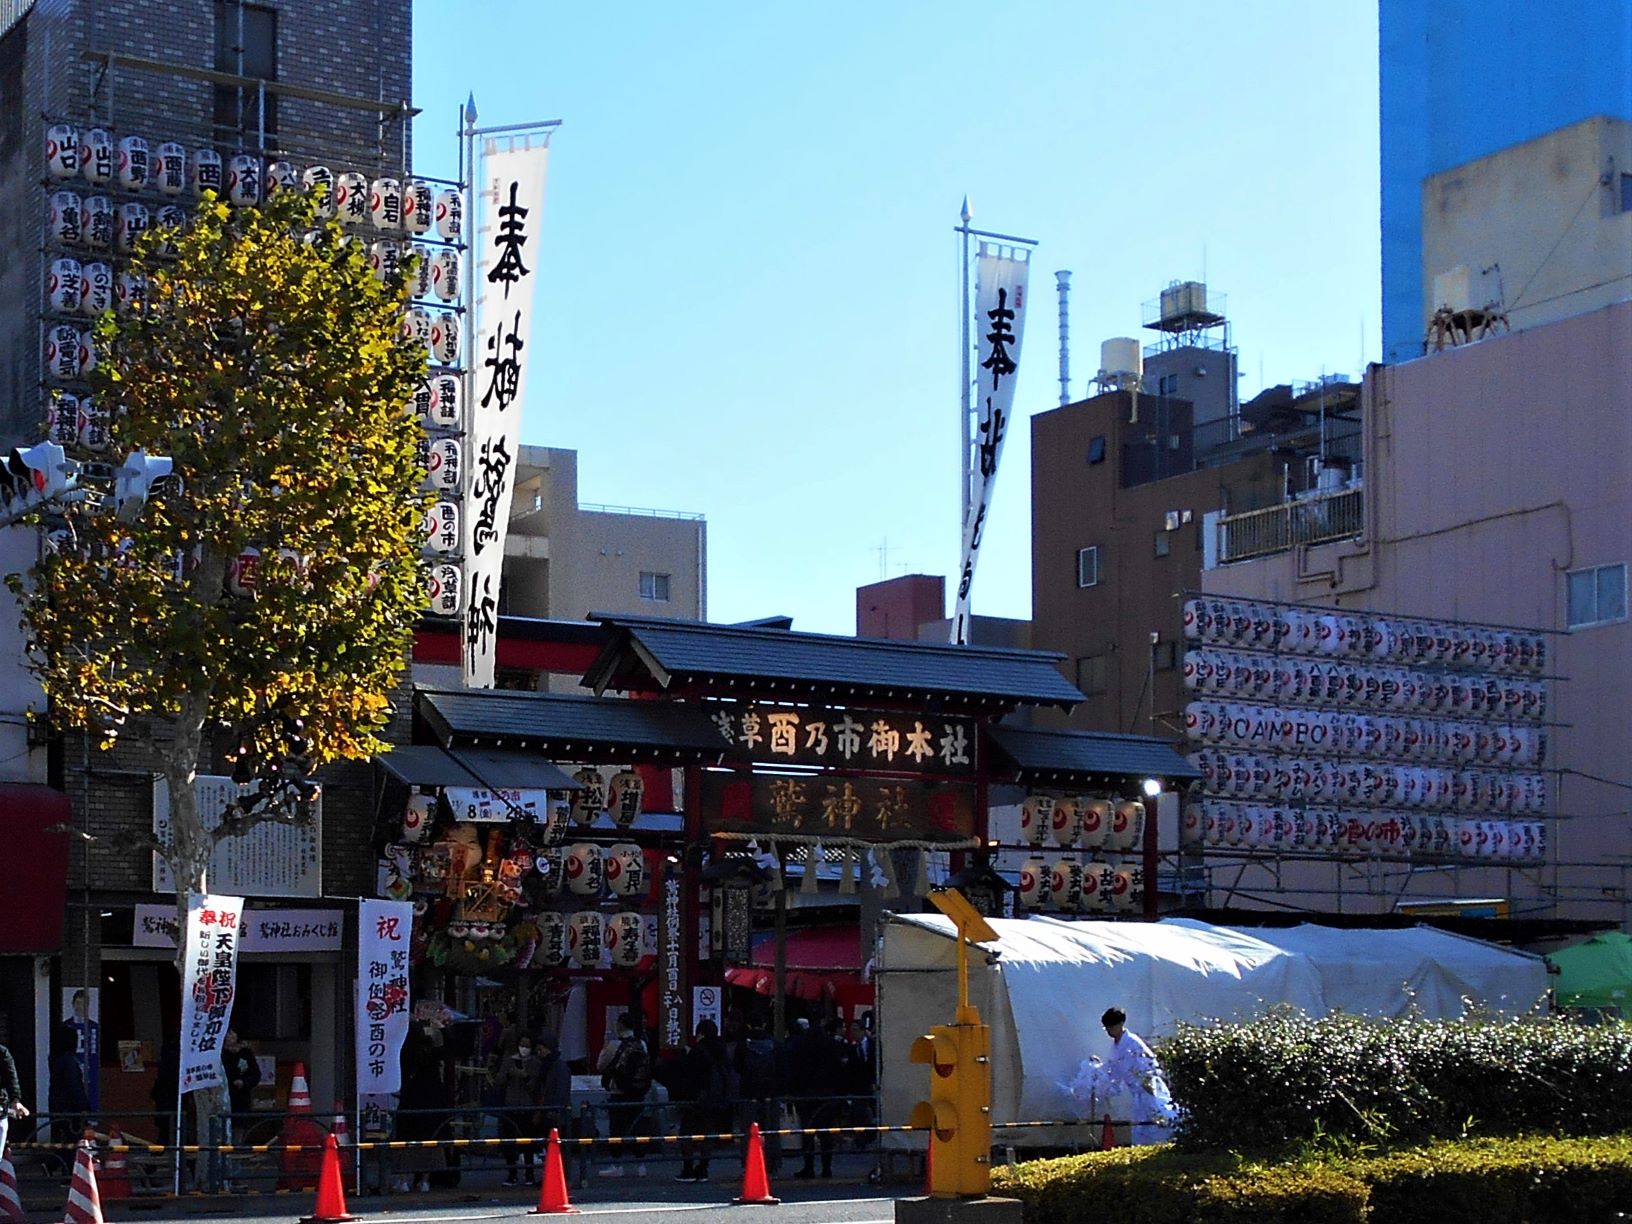 酉の市開催中の浅草 鷲神社 門の画像。